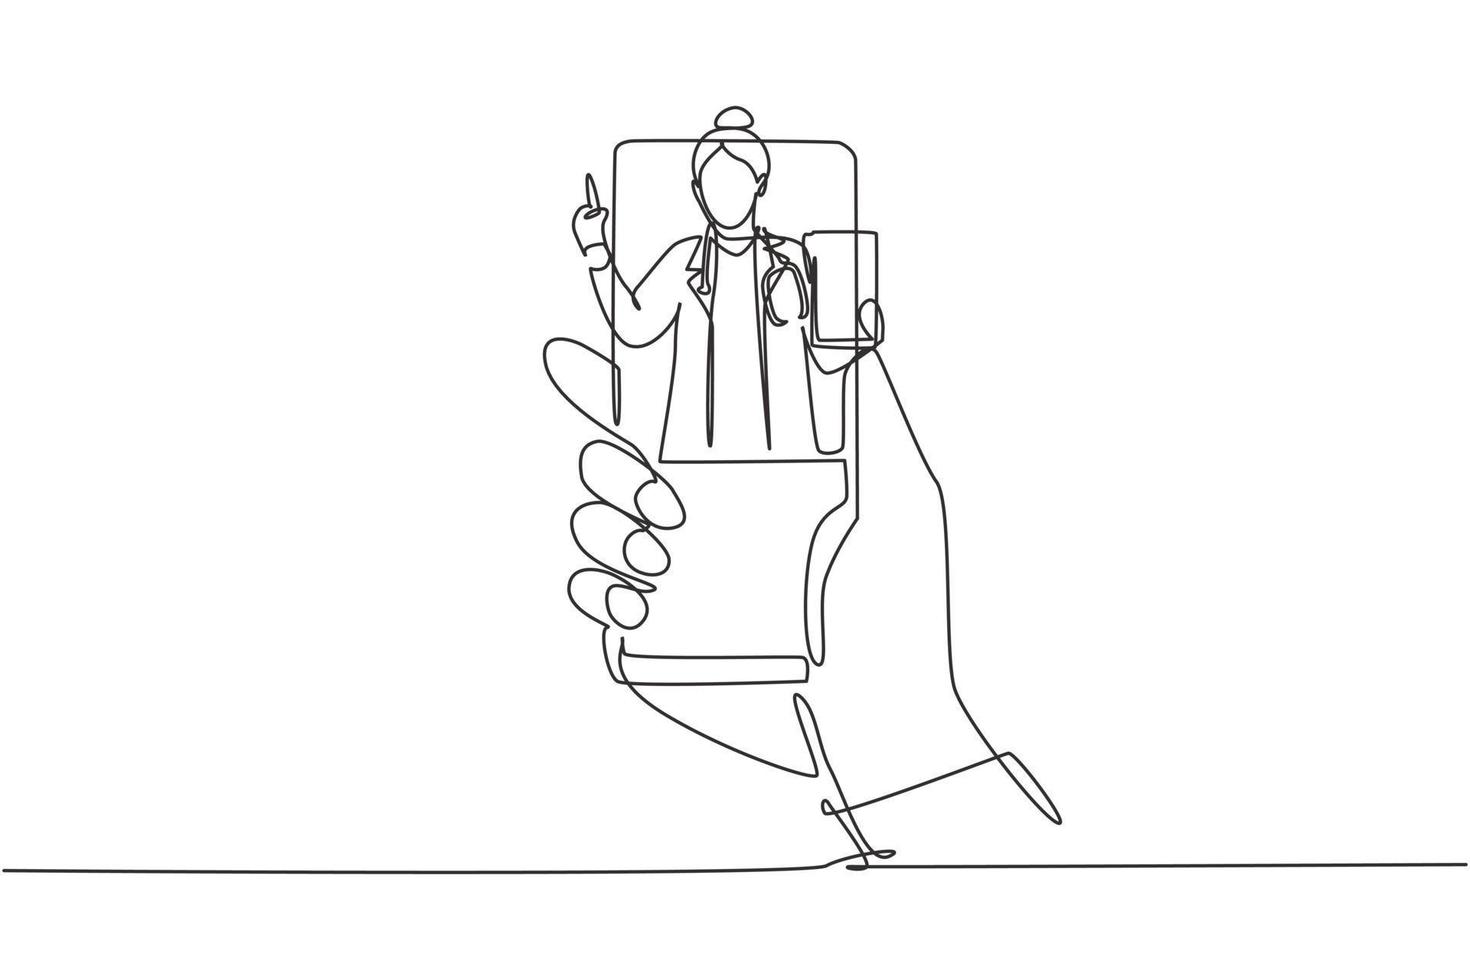 Einzelne eine Linie zeichnende Hand, die Smartphone hält, und es kommt eine Ärztin aus dem Smartphone-Bildschirm, der die Zwischenablage hält. Online-Beratungskonzept. moderner kontinuierlicher Draw-Design-Grafikvektor vektor